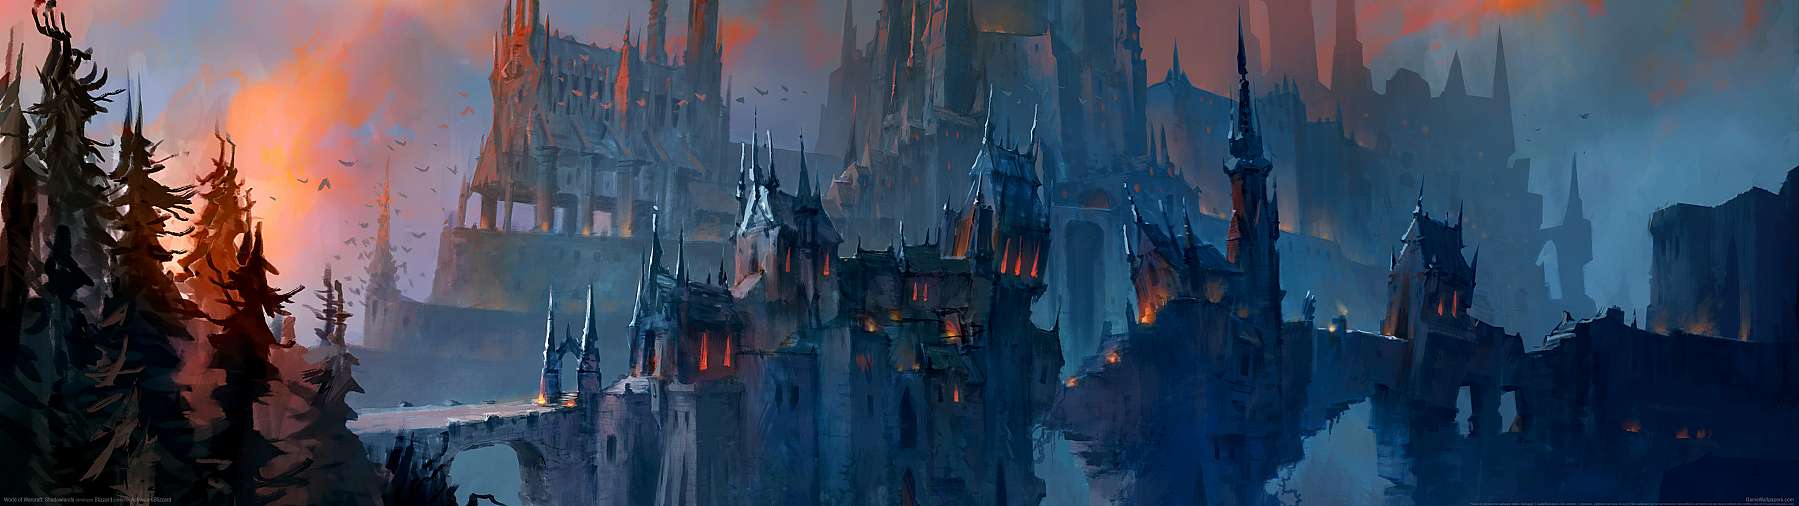 World of Warcraft: Shadowlands superwide achtergrond 04